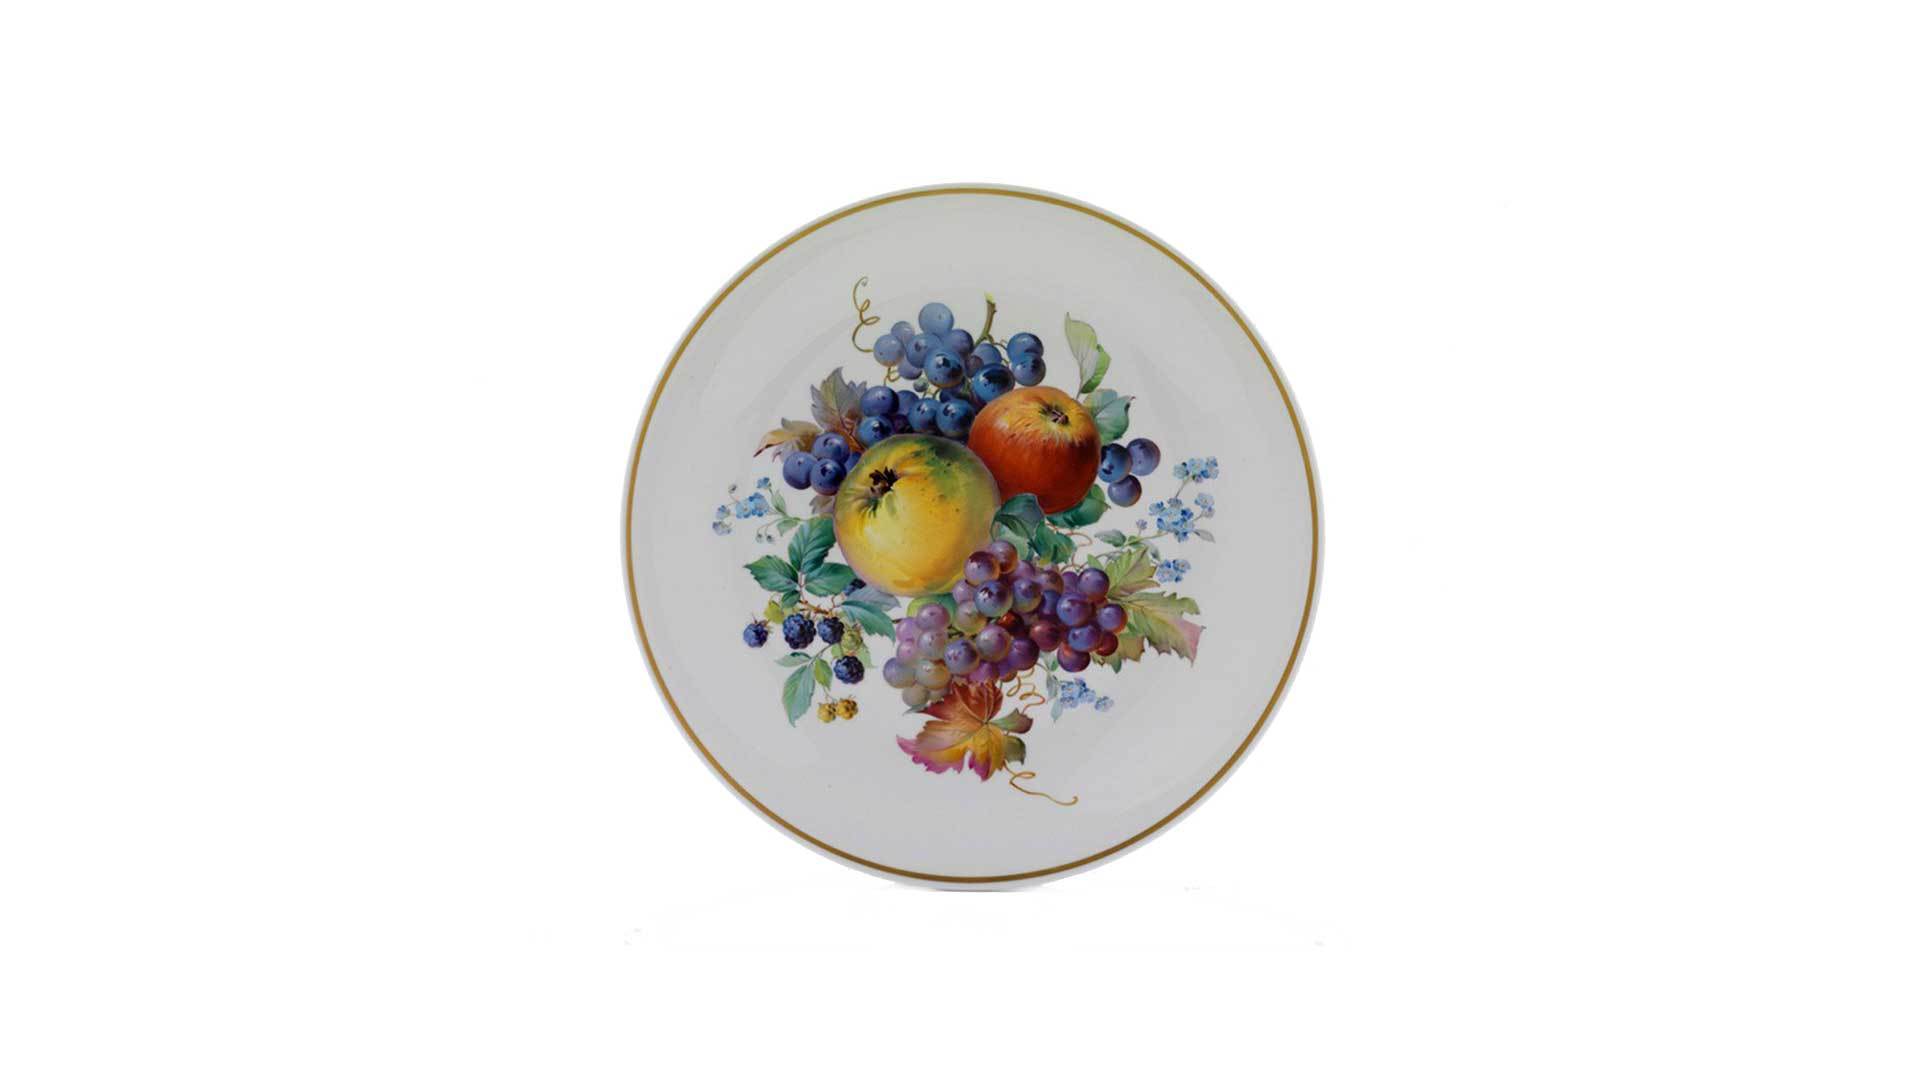 Тарелка настенная Meissen Натуралистическая роспись, фрукты, 35 см, 5 цветов